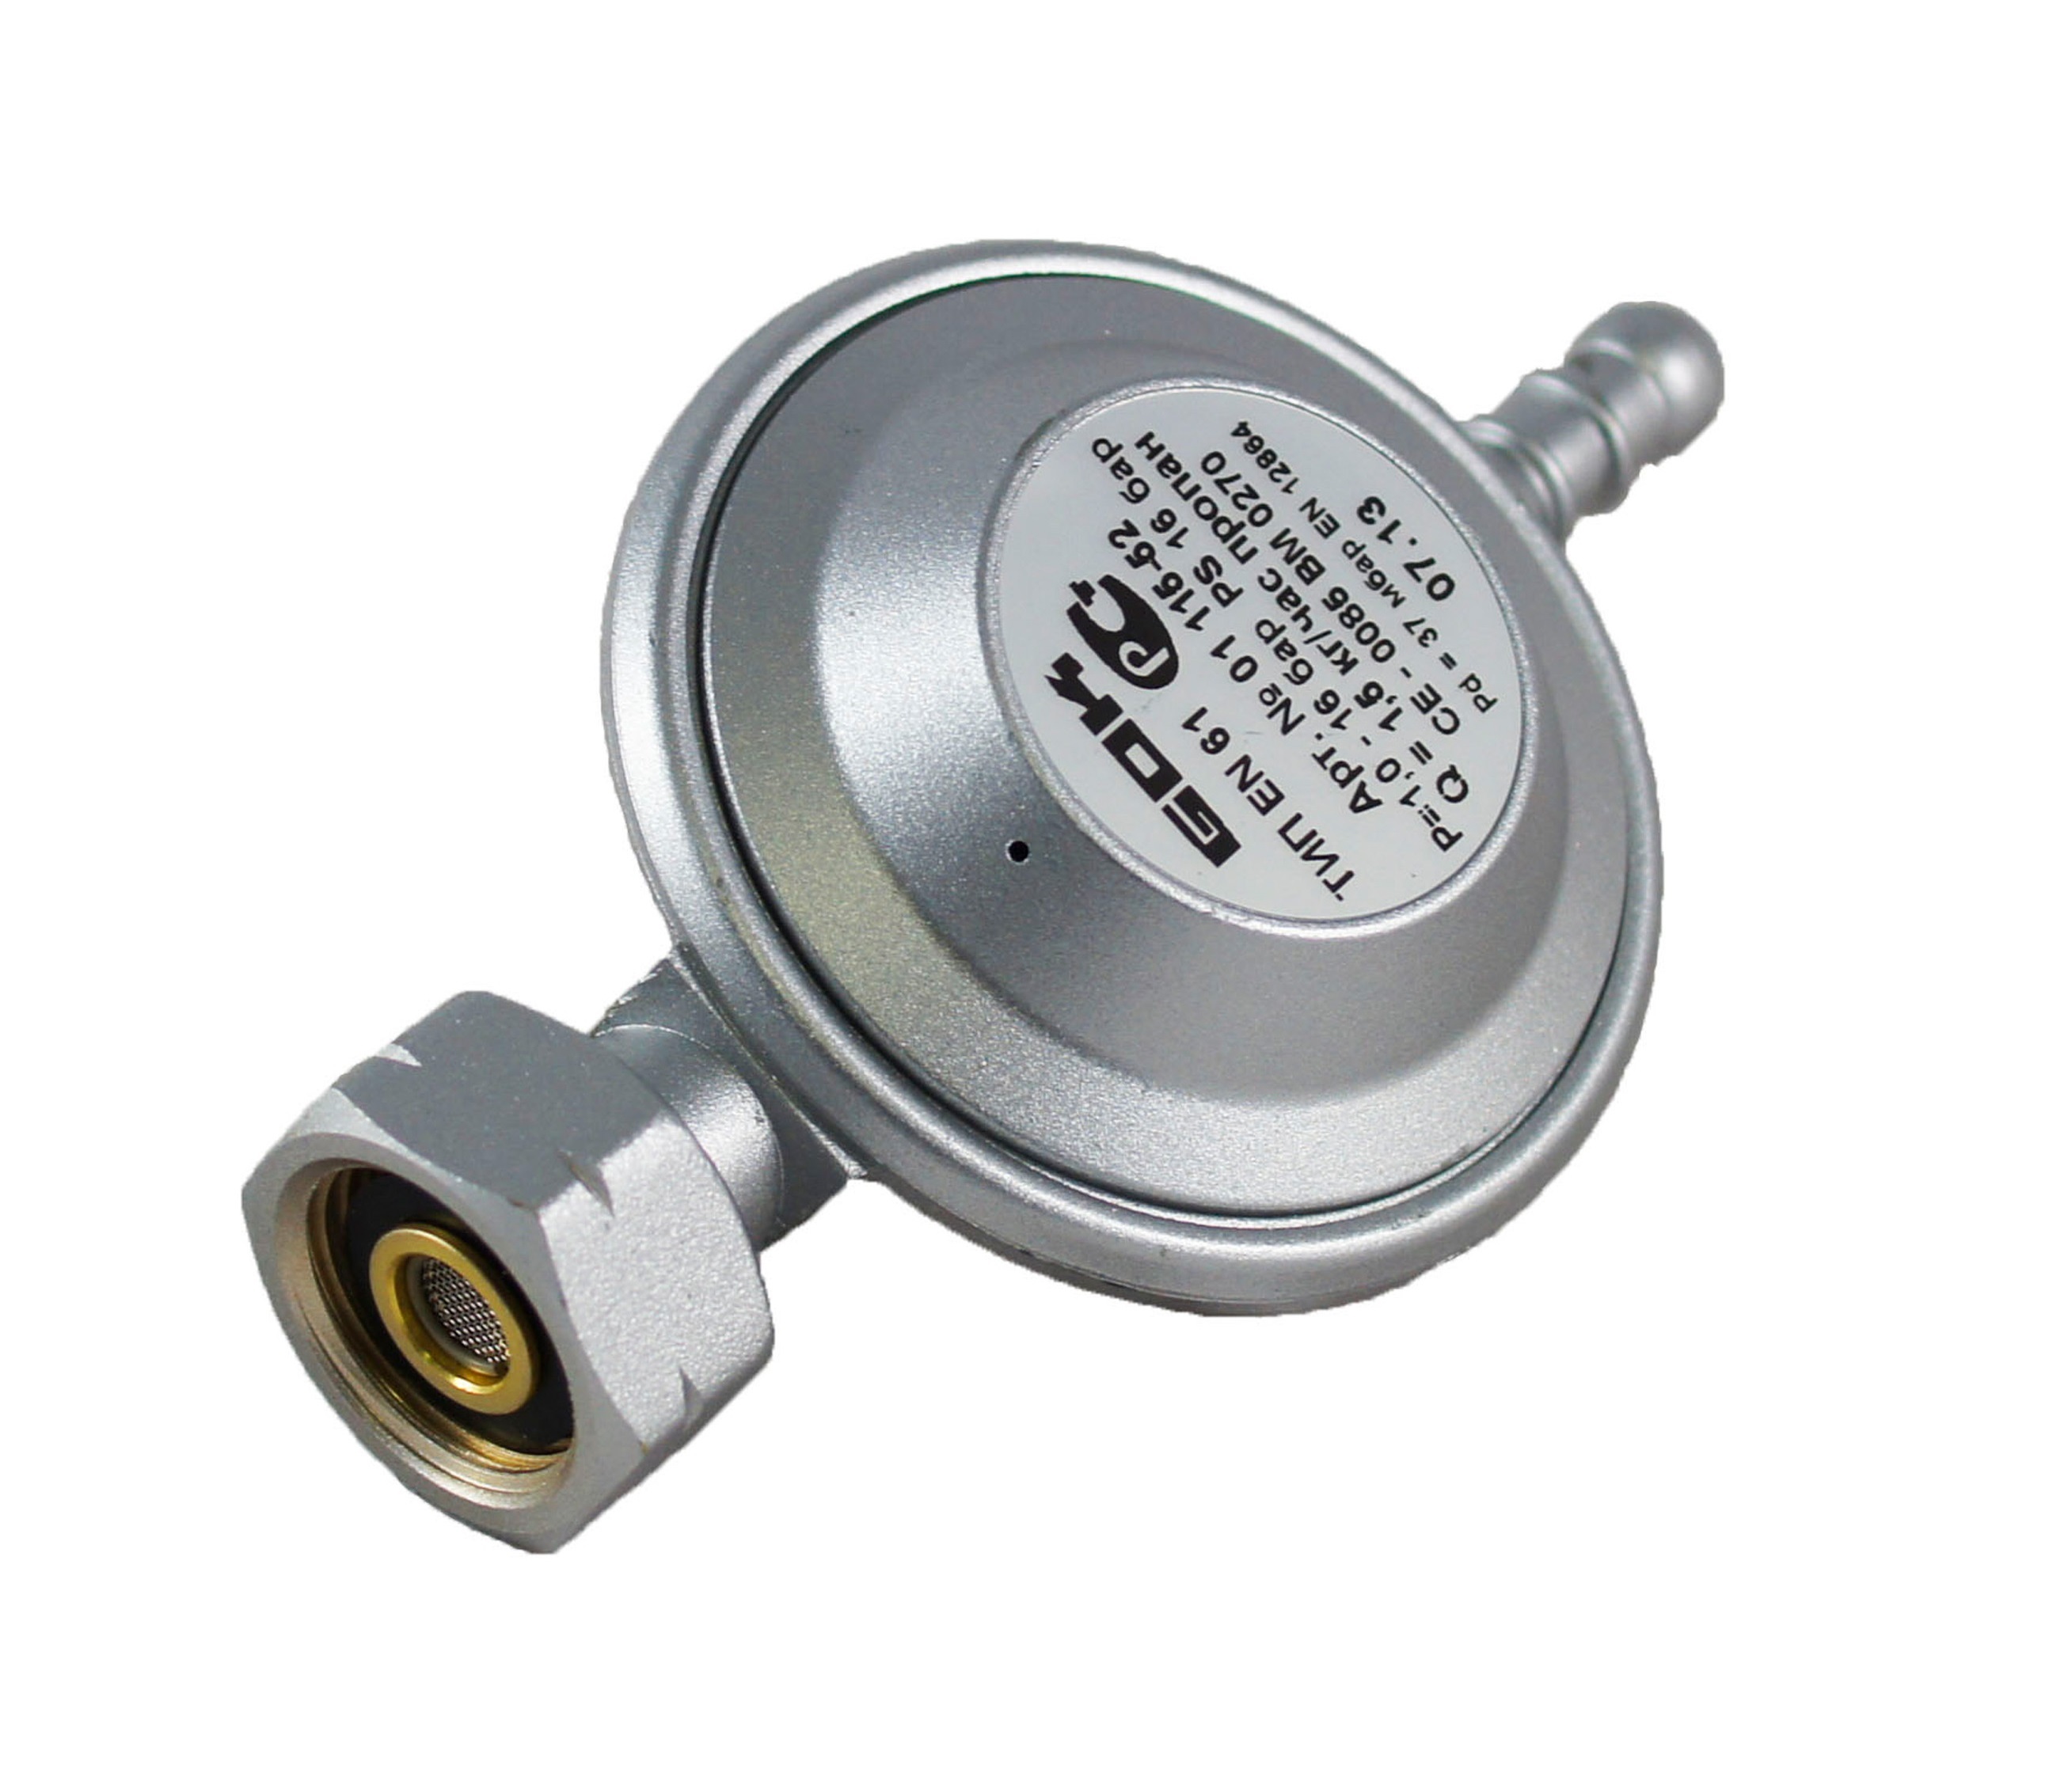 Регулятор давления газа GOK EN61 1,5кг/час 37 мбар СНГ скороварка низкого давления kitchenstar 20 см